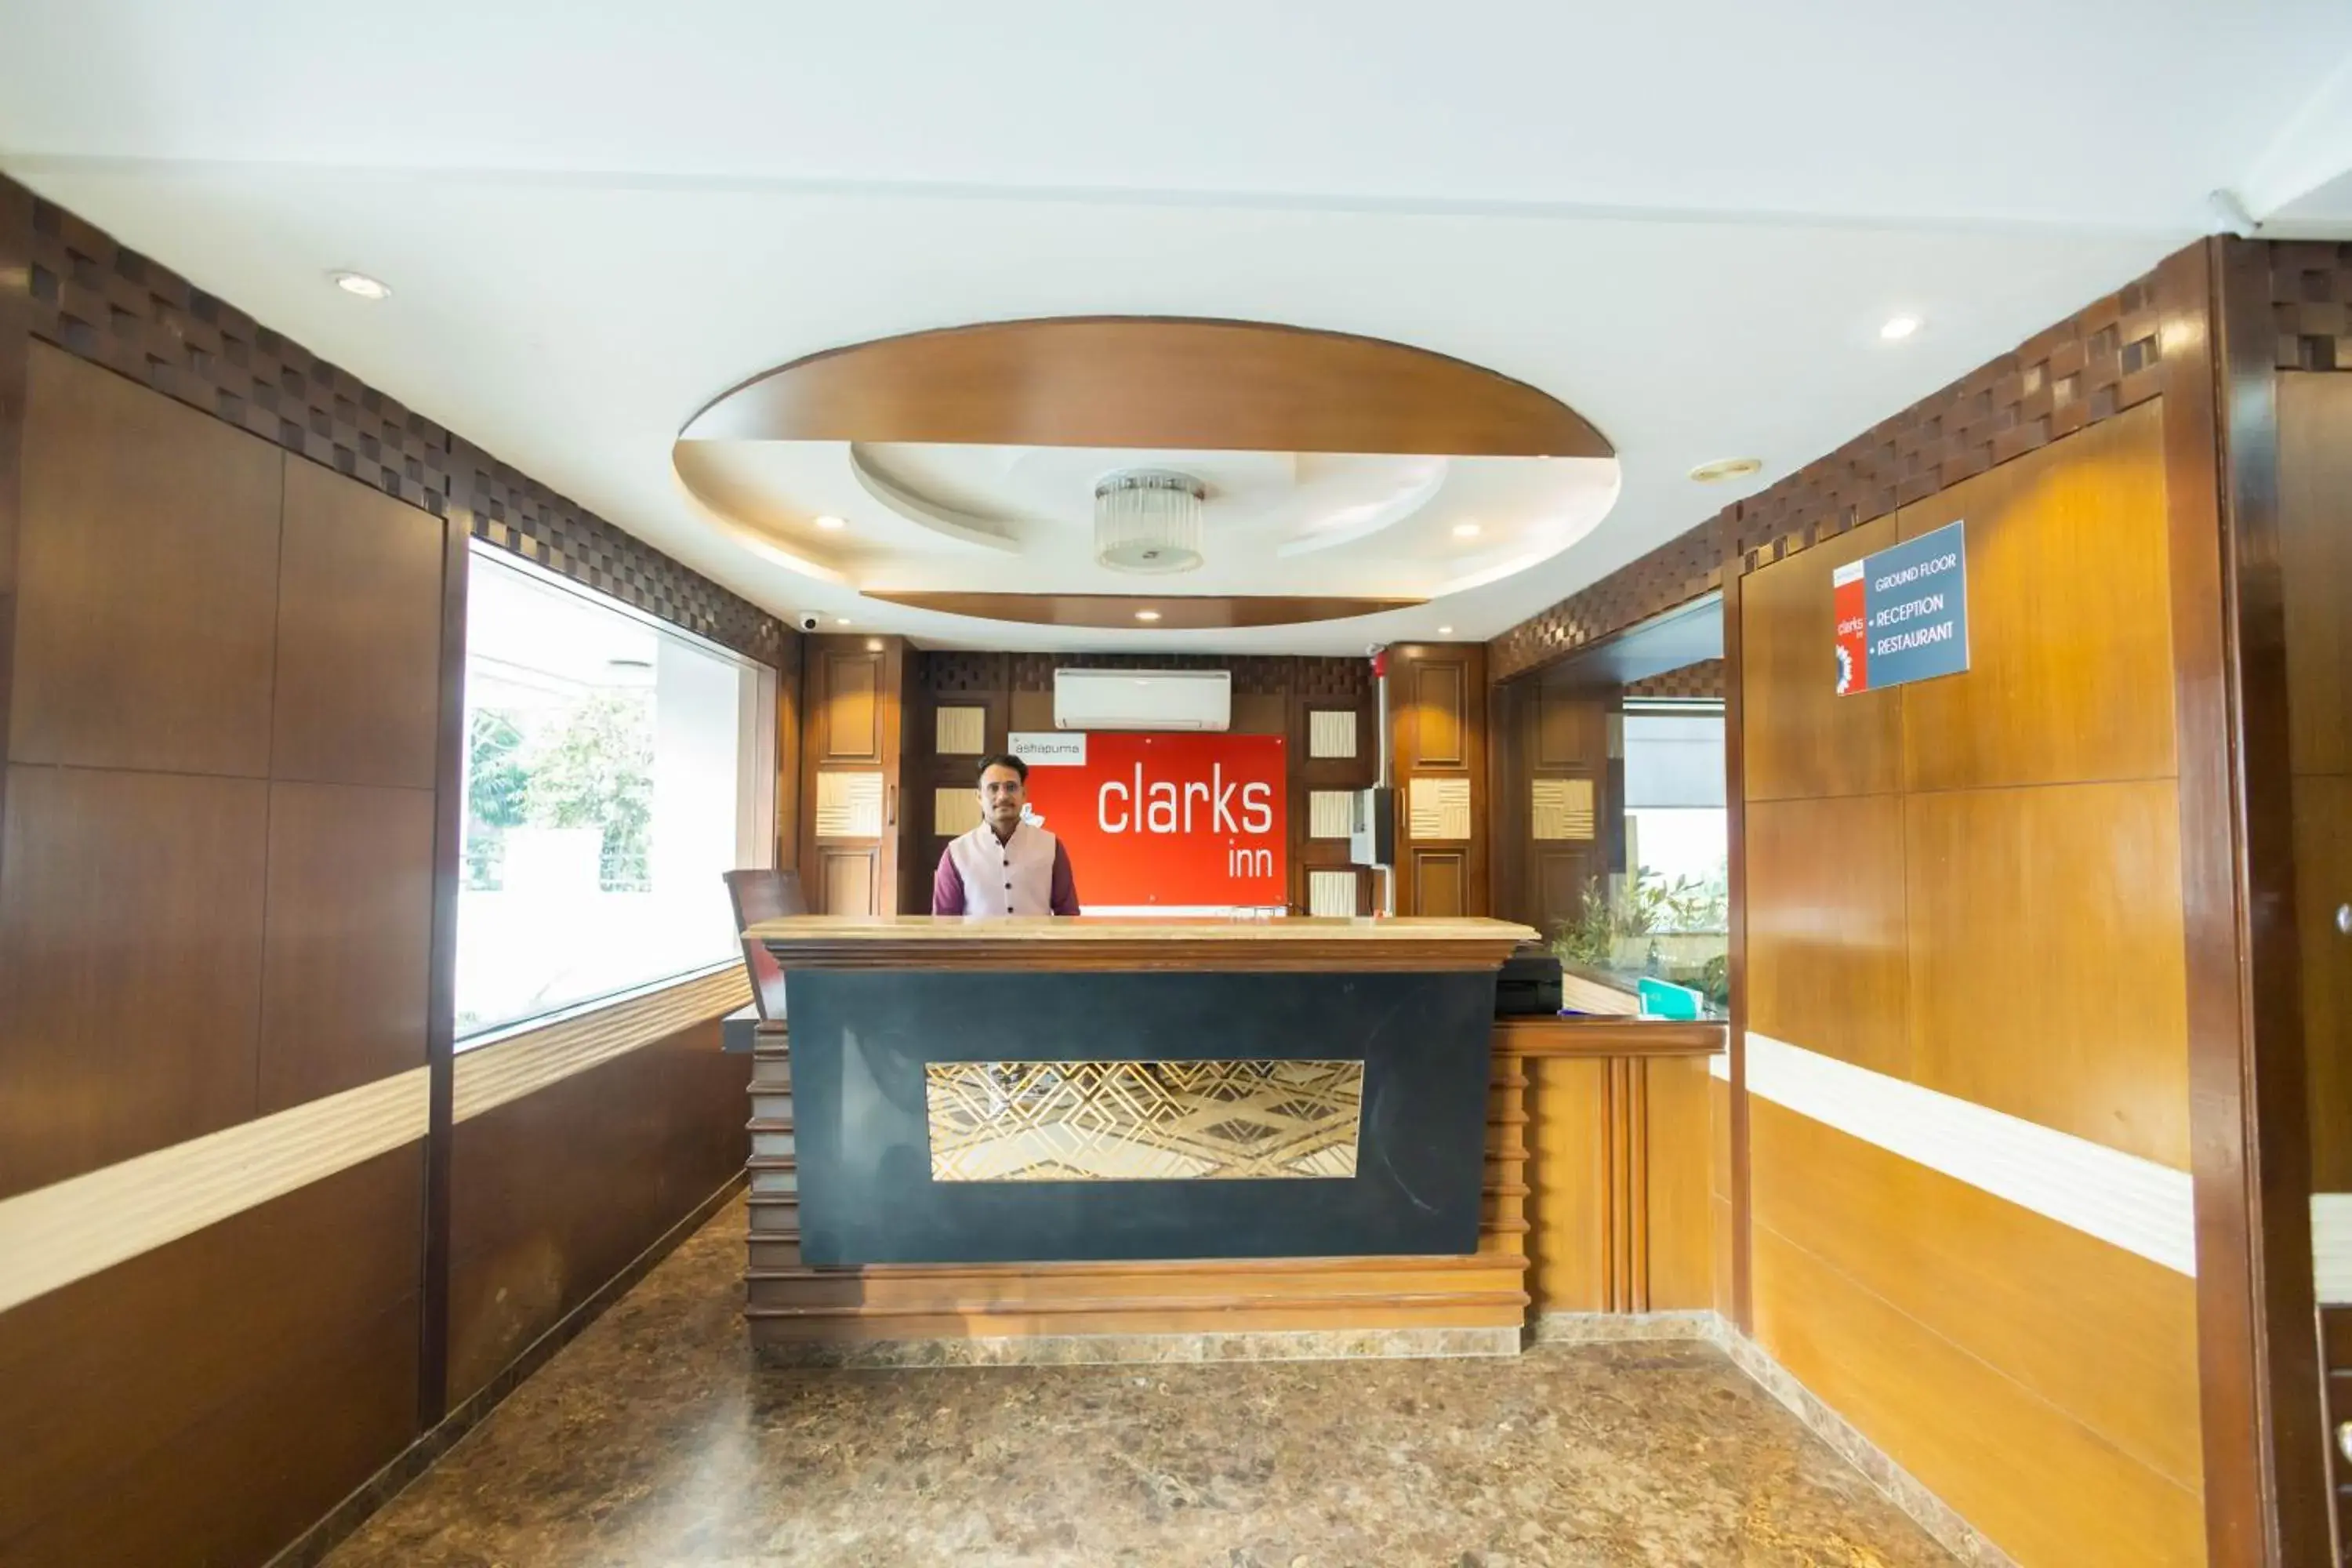 Lobby or reception, Lobby/Reception in Hotel Clarks Inn Jaipur, Banipark